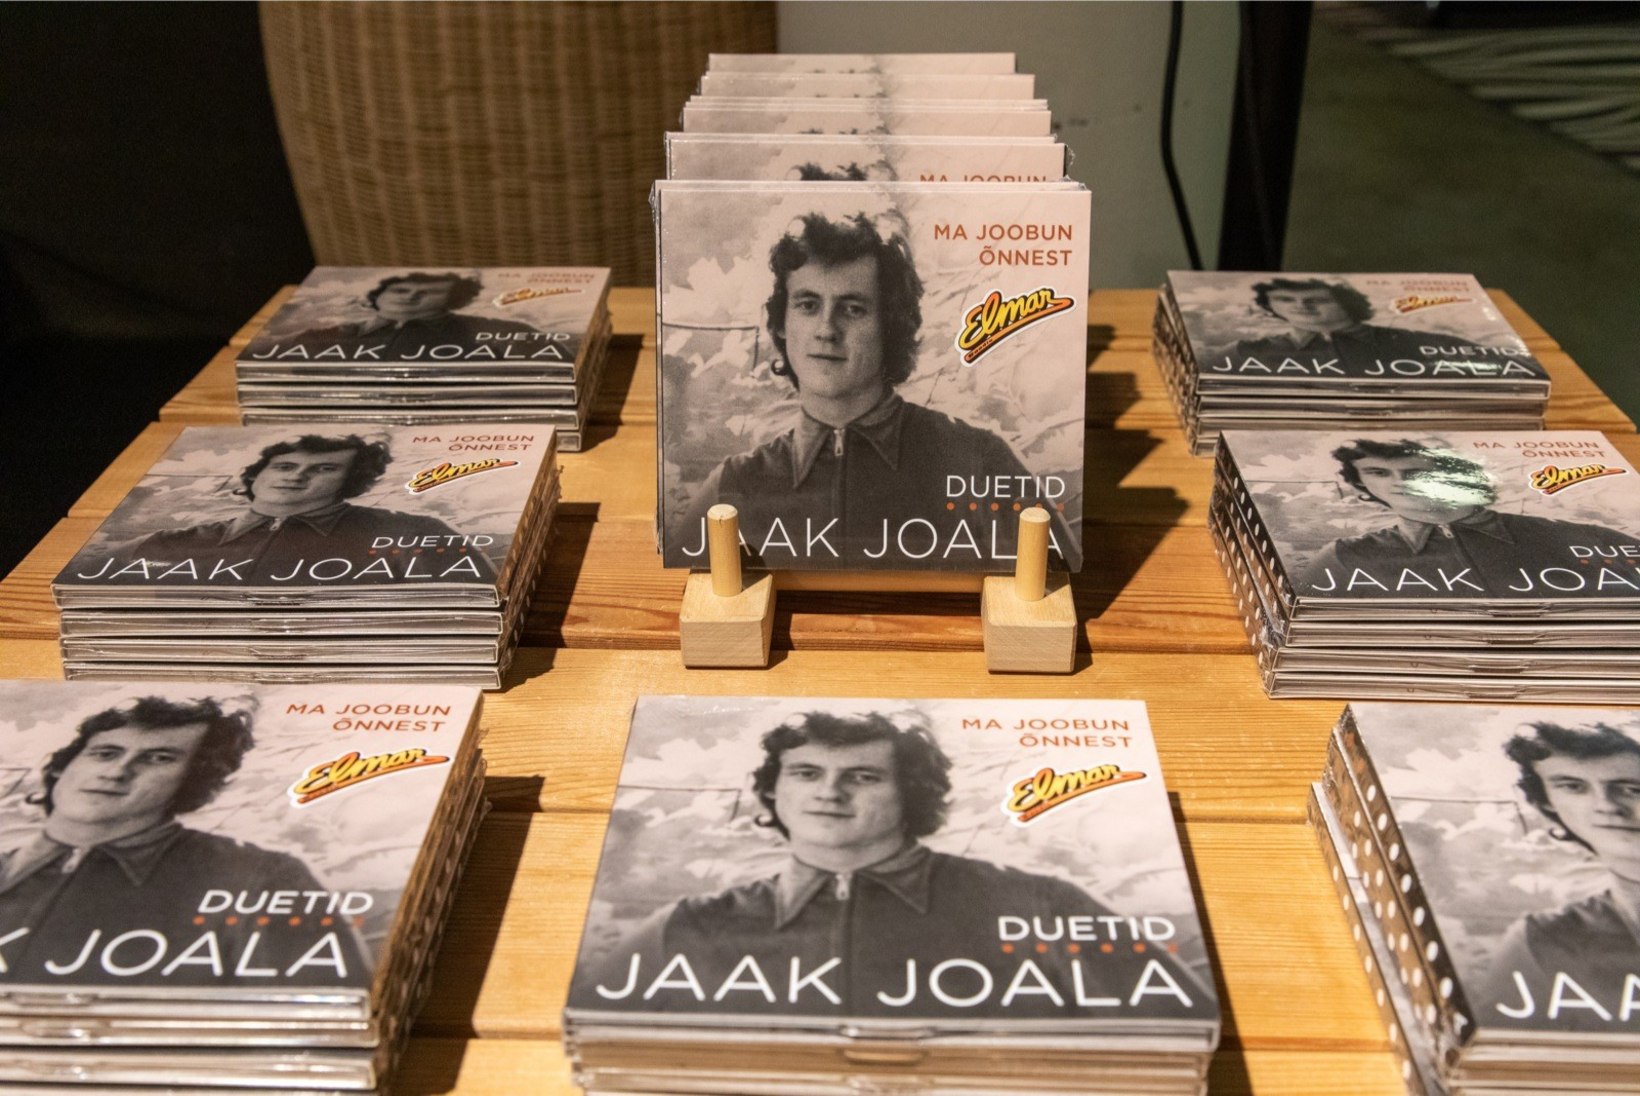 GALERII | Olavi Pihlamägi esitles Jaak Joala albumit, millel kõlavad duetid